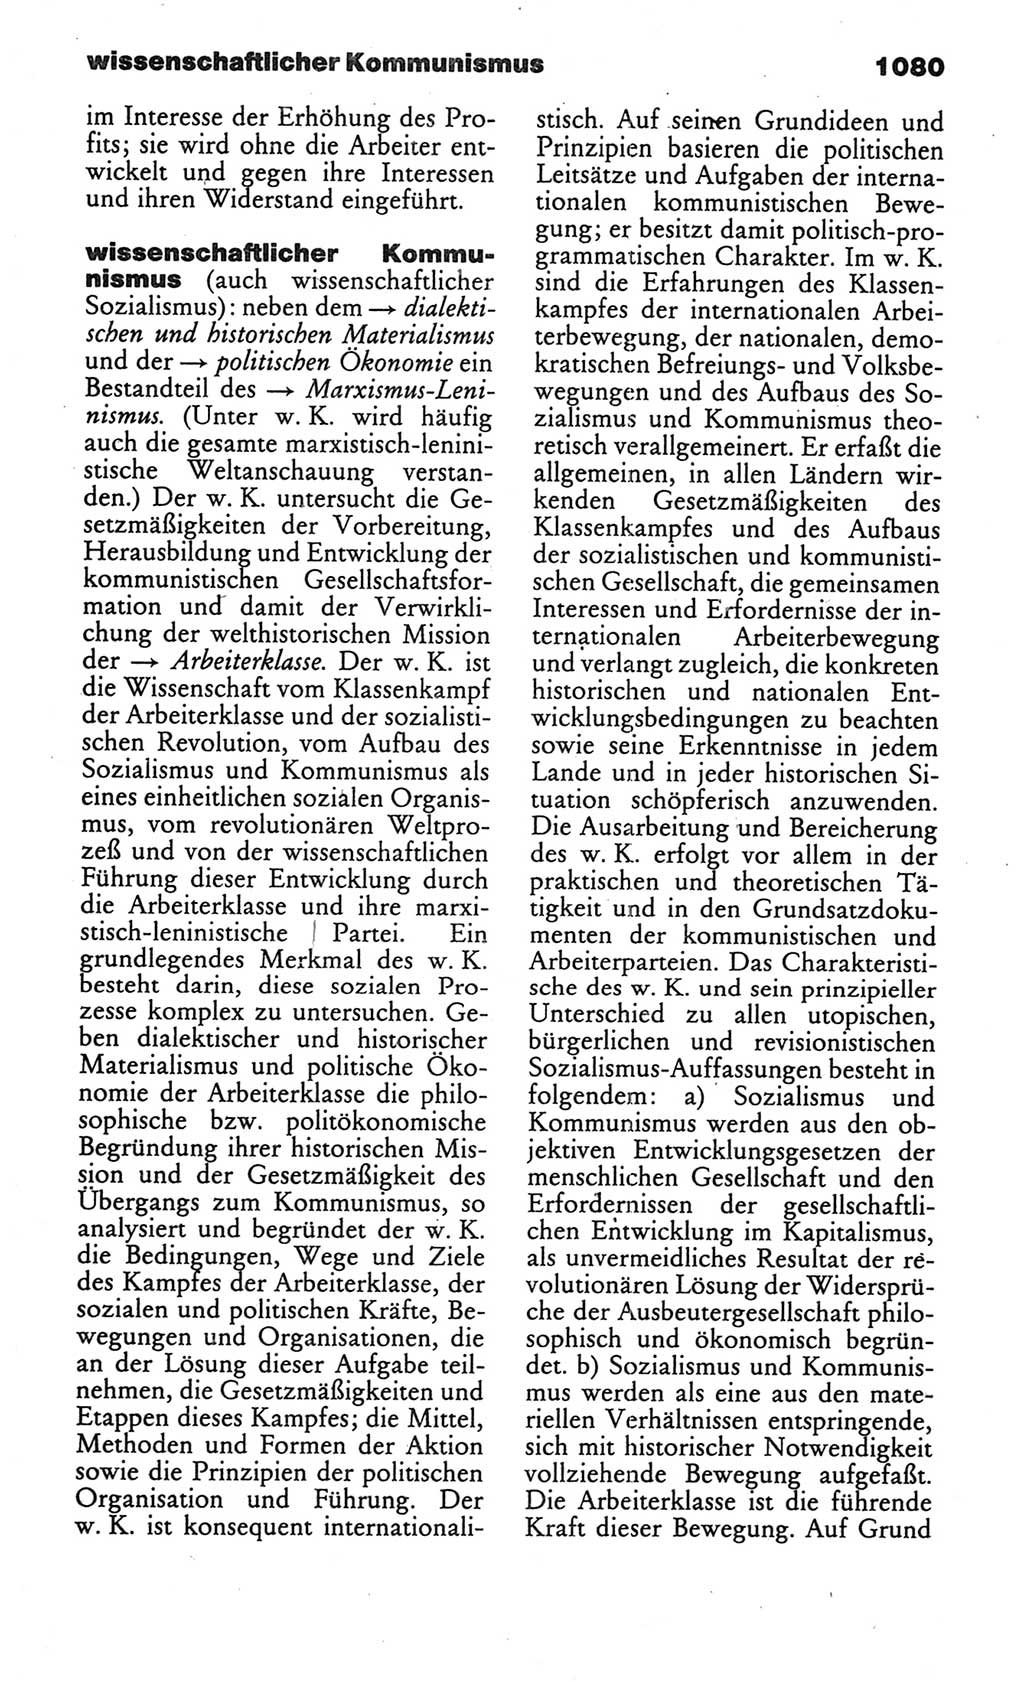 Kleines politisches Wörterbuch [Deutsche Demokratische Republik (DDR)] 1986, Seite 1080 (Kl. pol. Wb. DDR 1986, S. 1080)